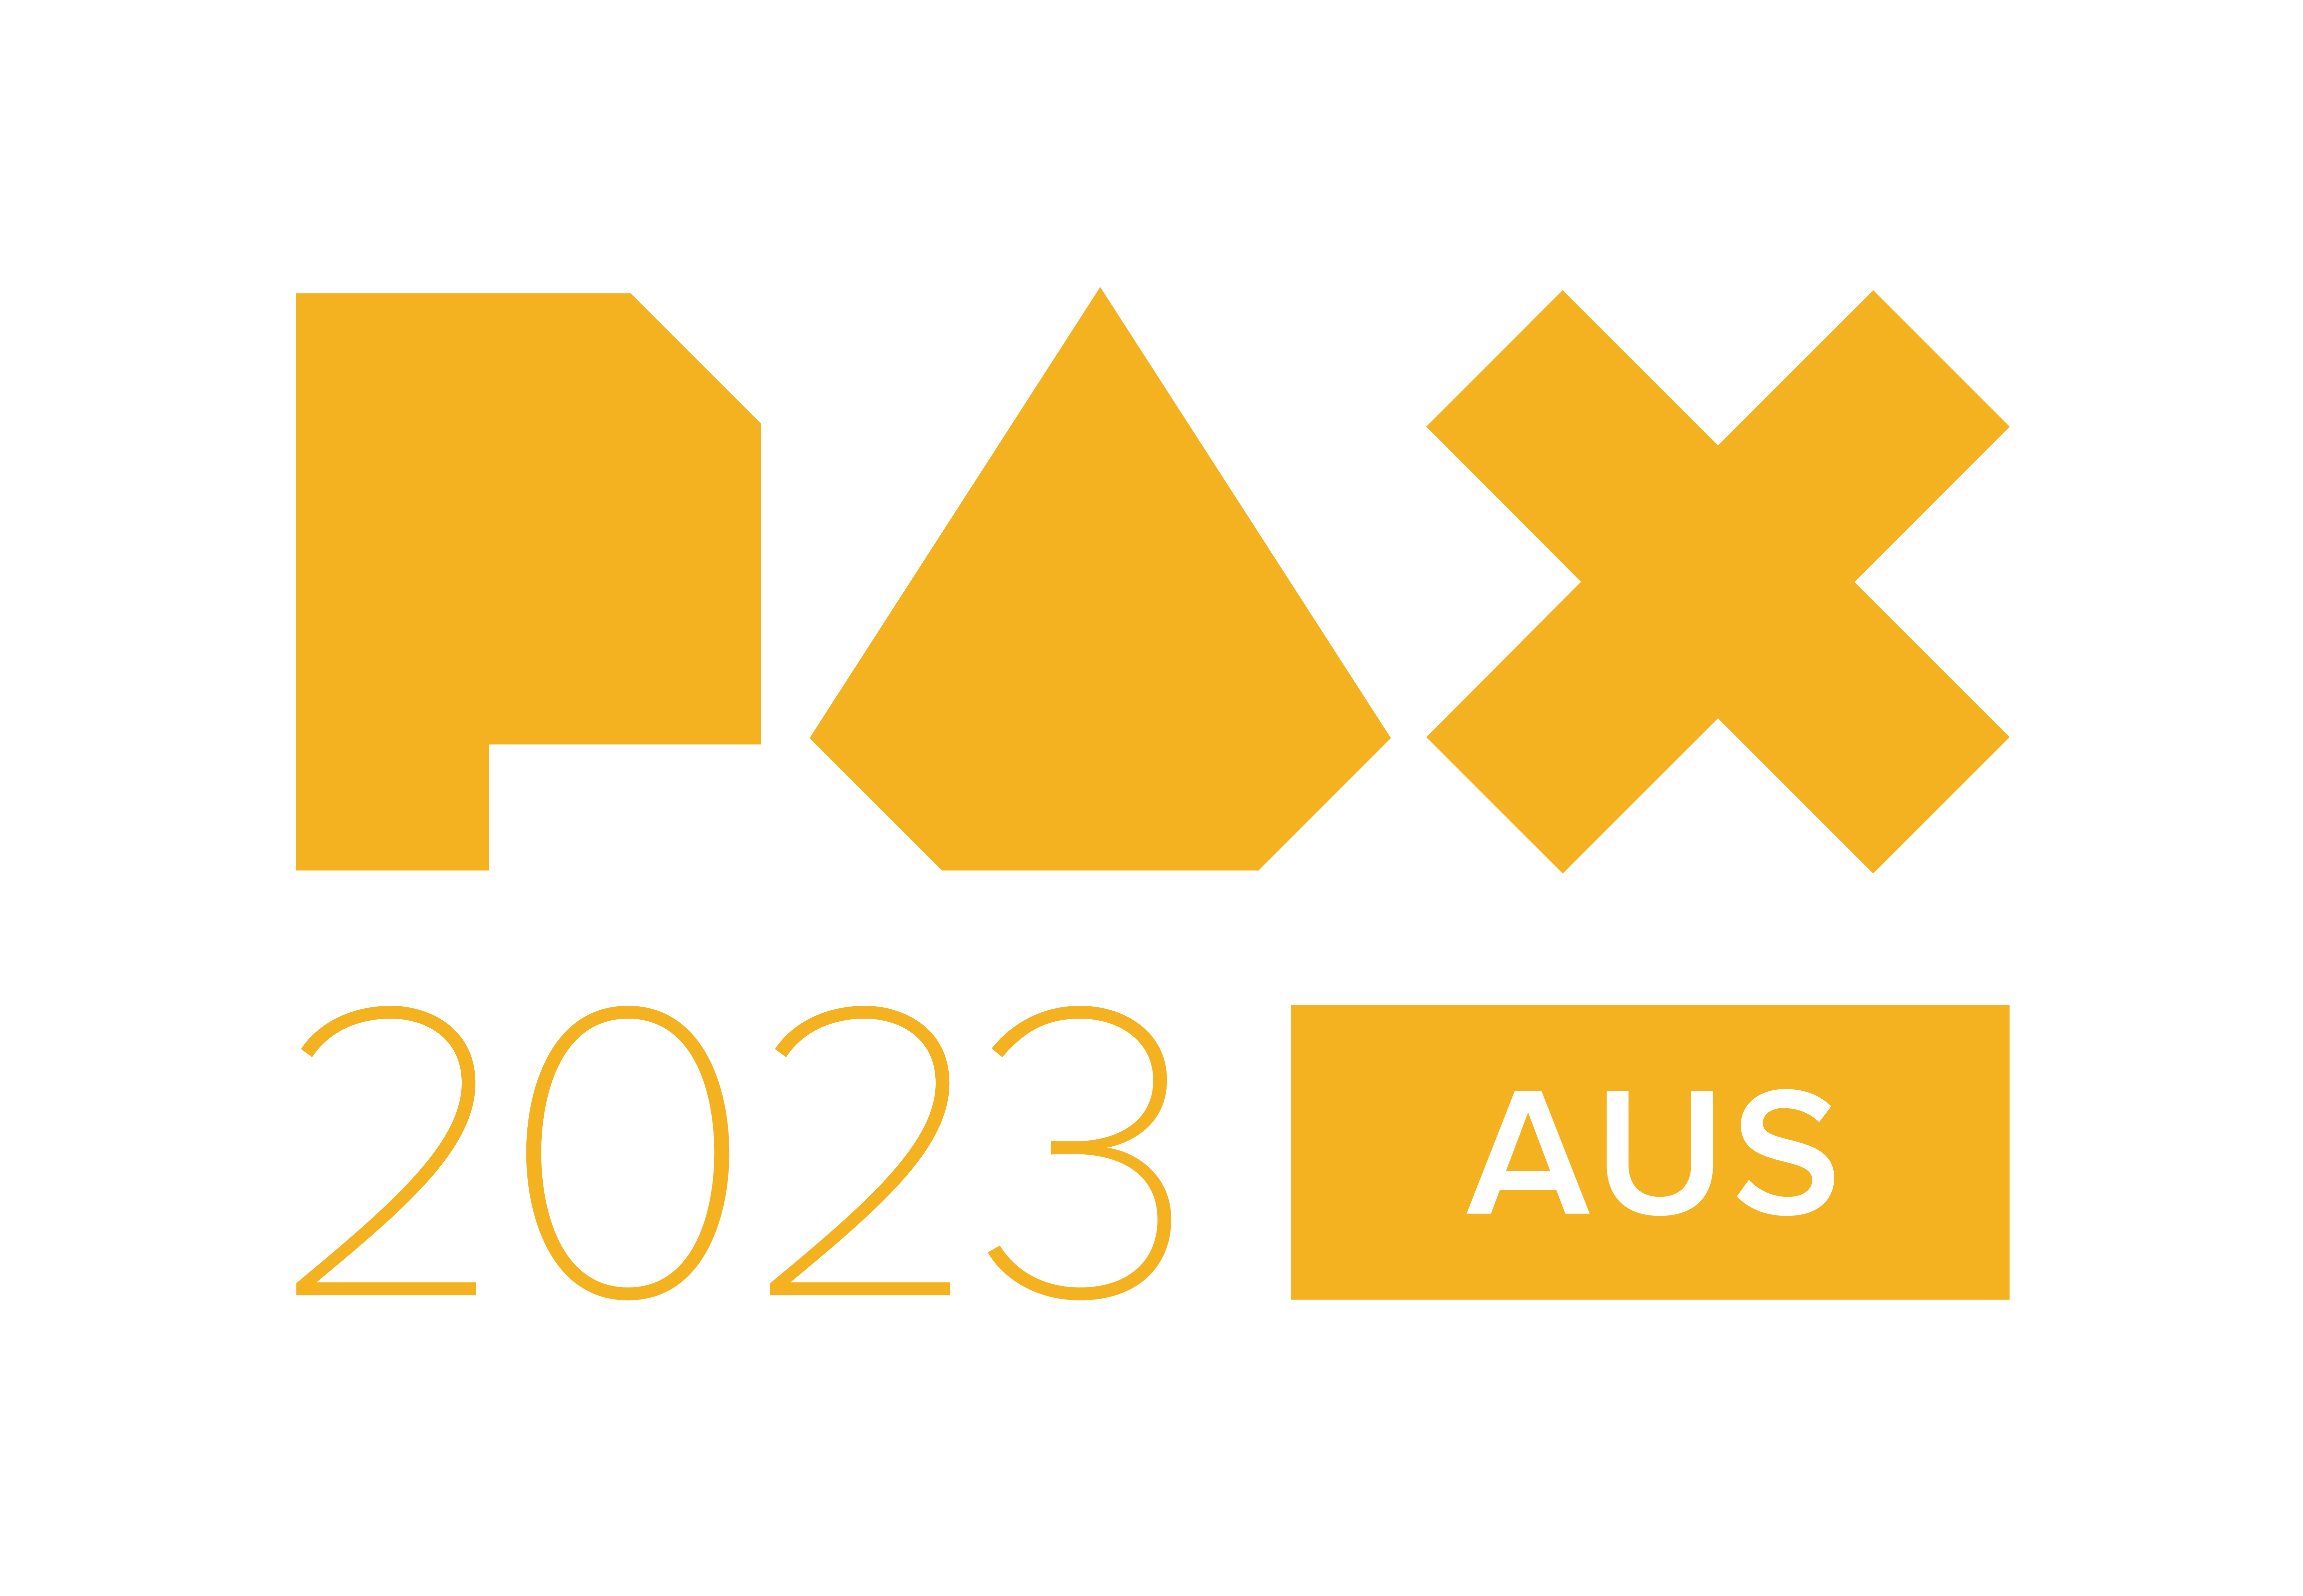 PAX Aus kicks off soon!